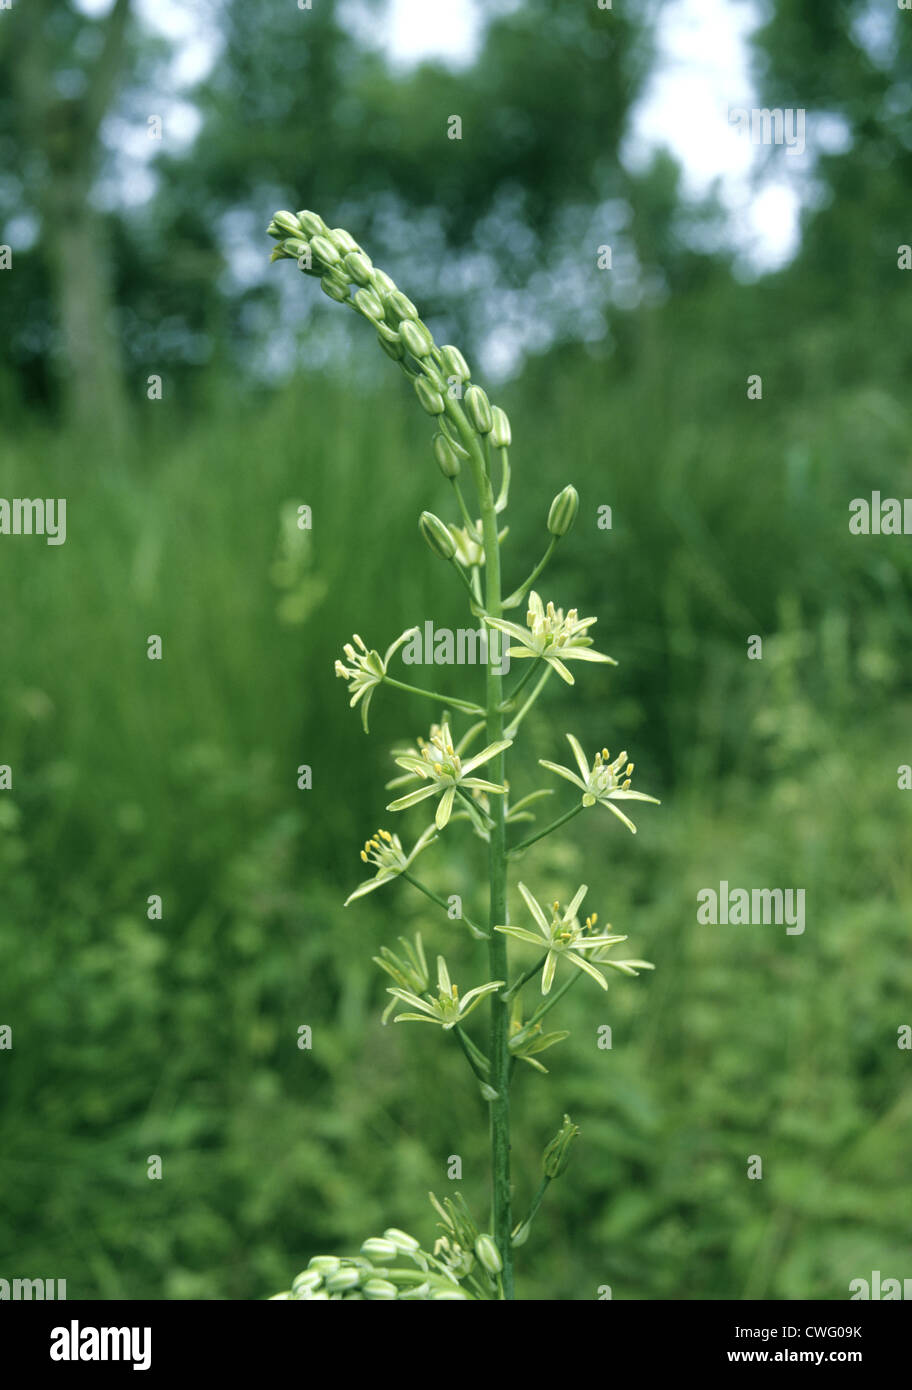 SPIKED STAR-OF-BETHLEHEM Ornithogalum pyrenaicum (Liliaceae) Stock Photo